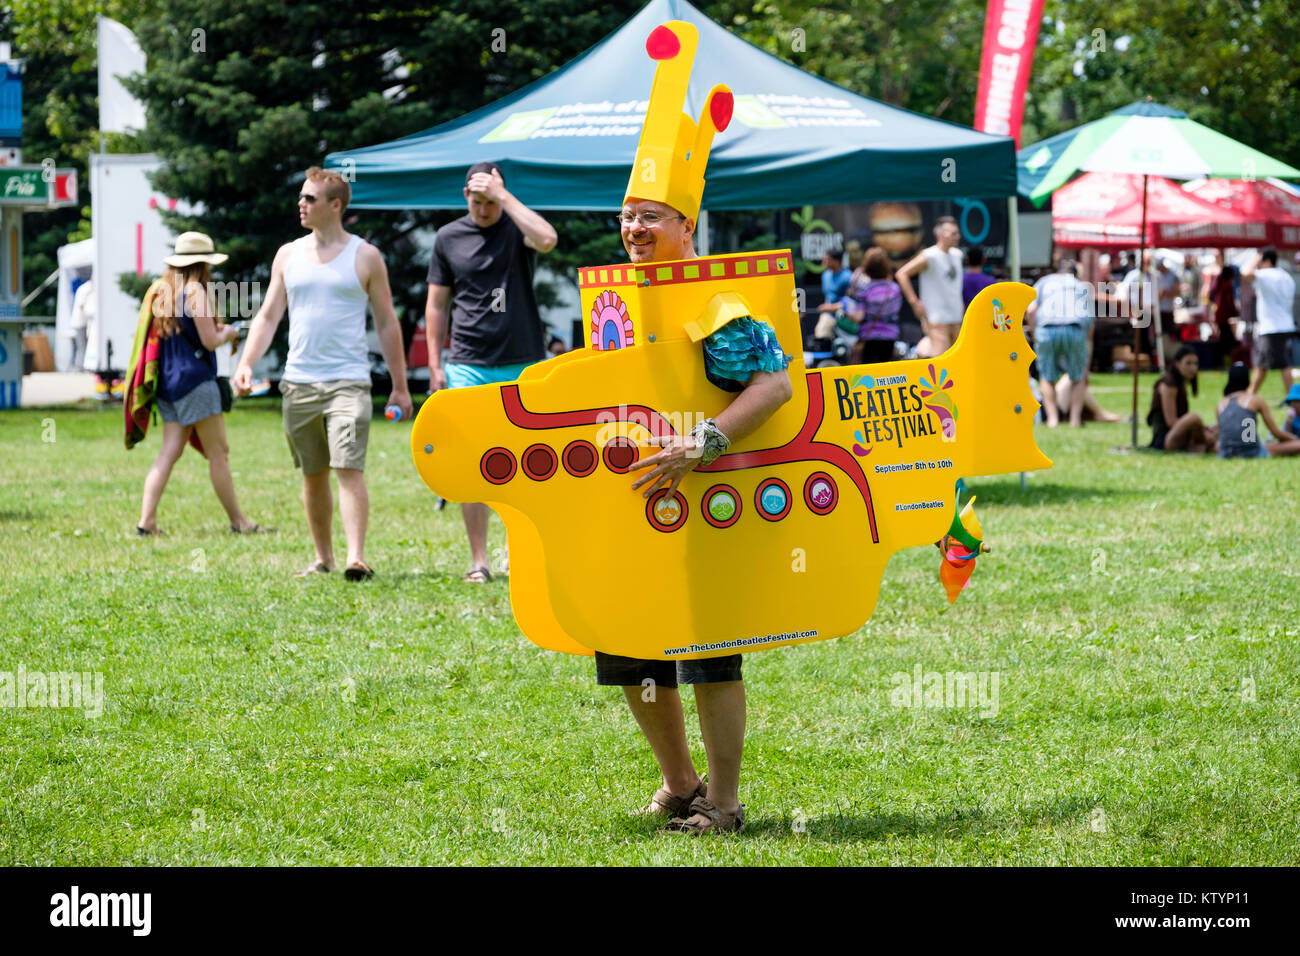 Homme habillé avec un costume de sous-marin jaune, prop, la promotion de la London Beatles Festival, un festival d'été tenue à London, Ontario, Canada. Banque D'Images